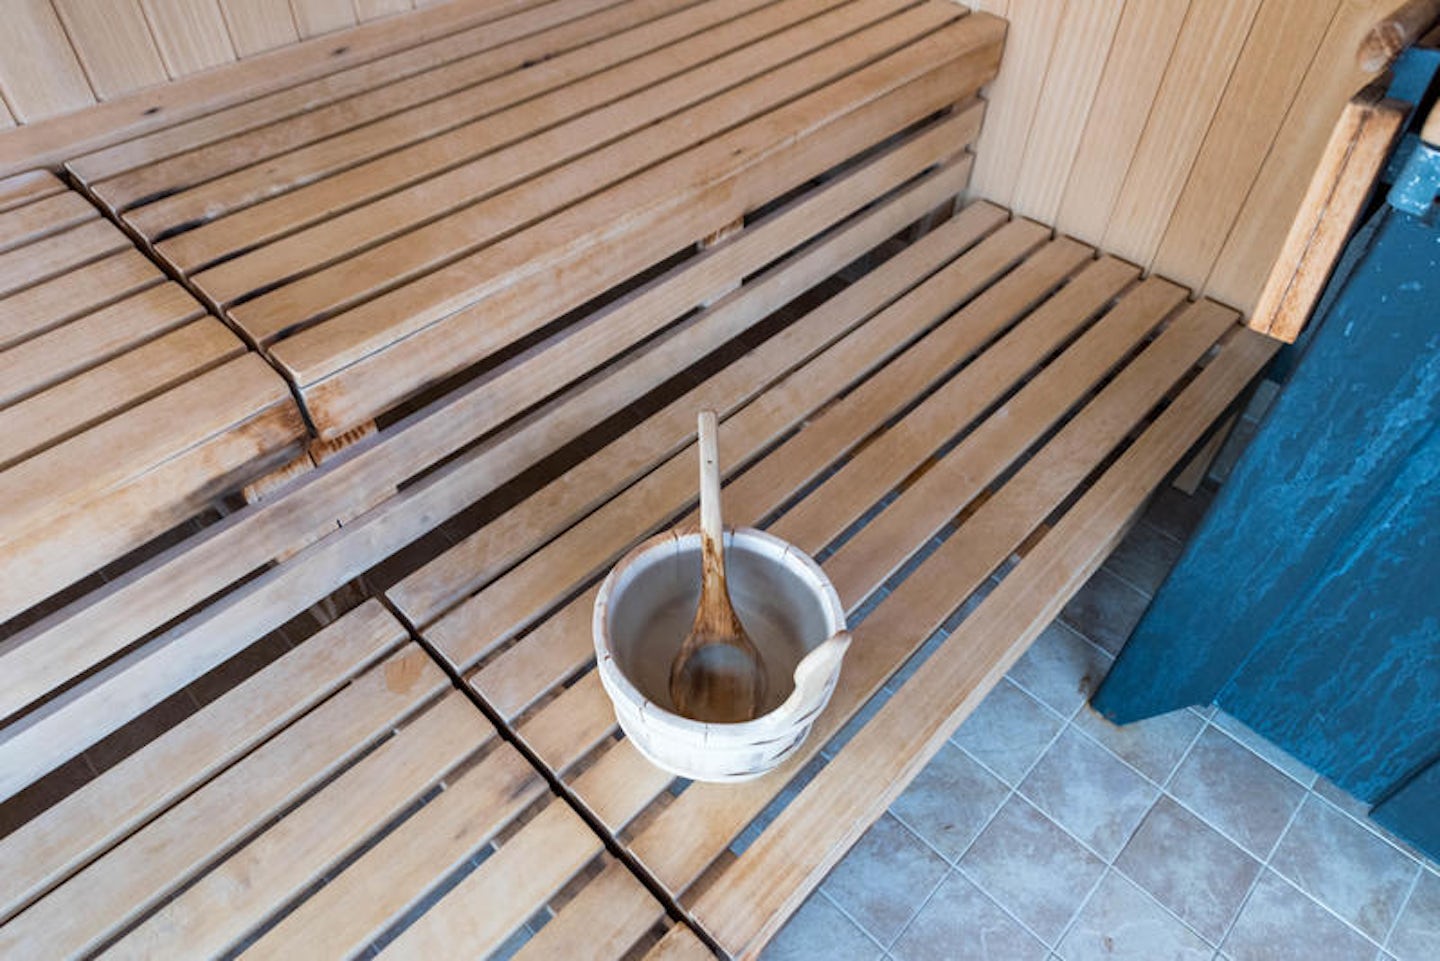 Sauna at Mandara Spa on Norwegian Pearl